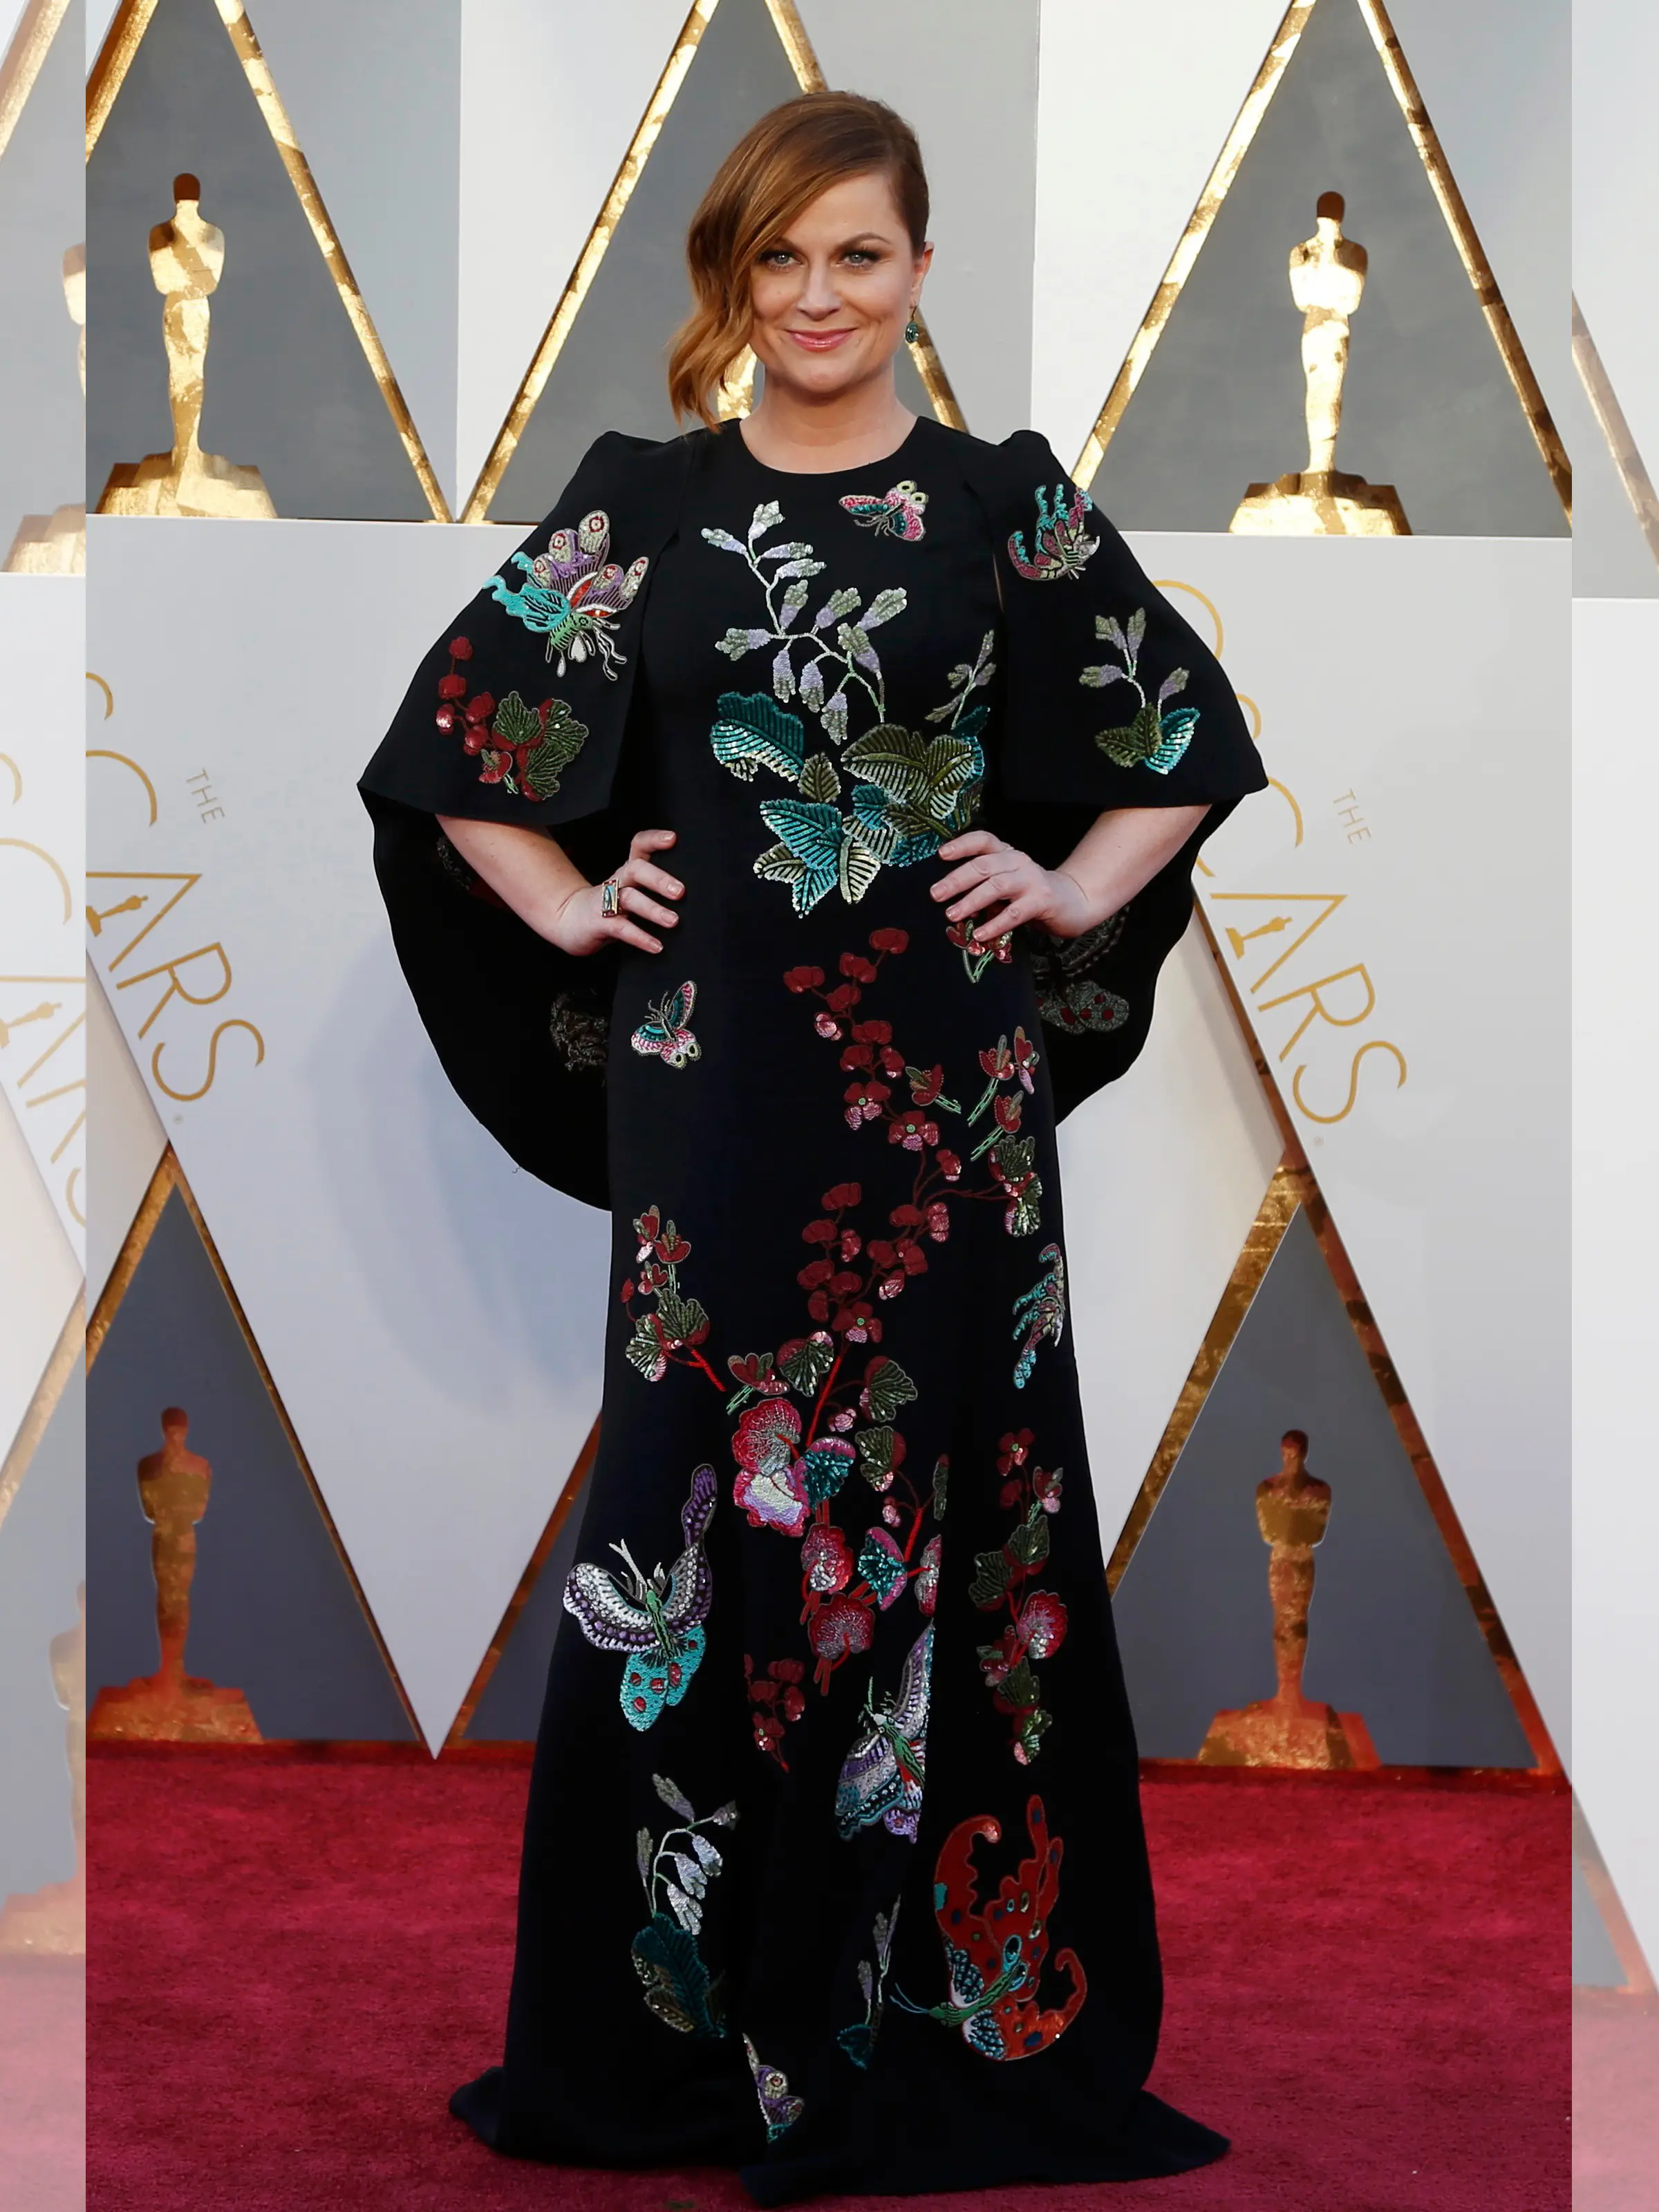 Aktris Amy Poehler mengenakan gaun hitam motif bunga dan kupu-kupu berjubahnya ketika berpose di red carpet Piala Oscar 2016 di Hollywood, California, Minggu (28/2). (REUTERS/ Lucy Nicholson)